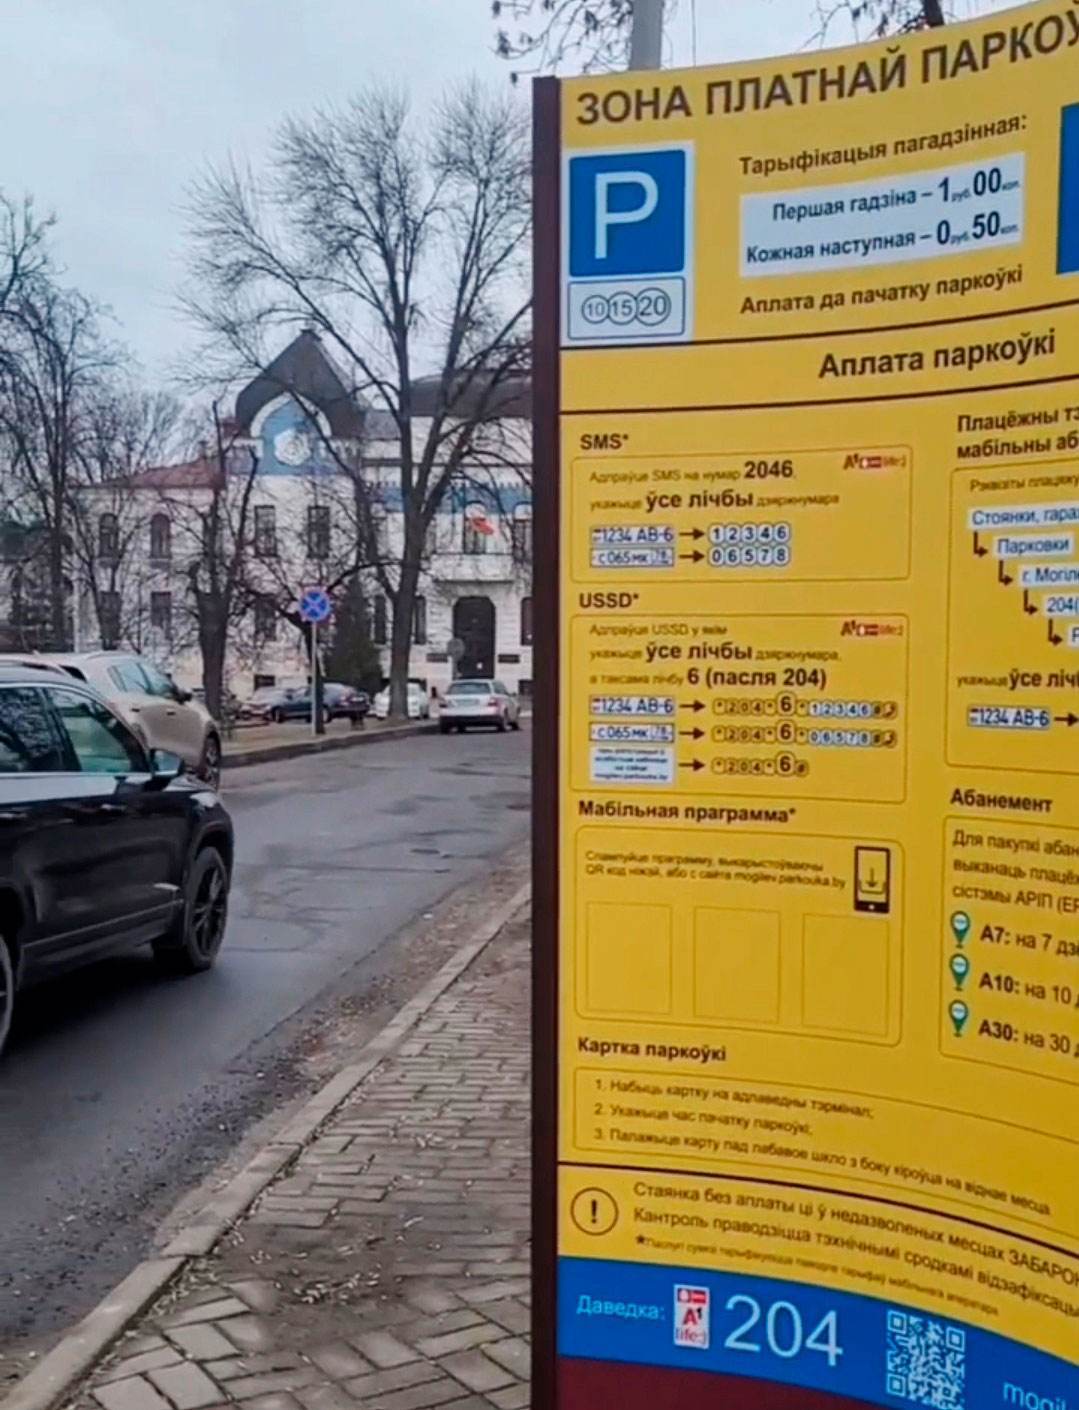 В центре Могилева начала работу платная парковка. Как работает и сколько стоит?